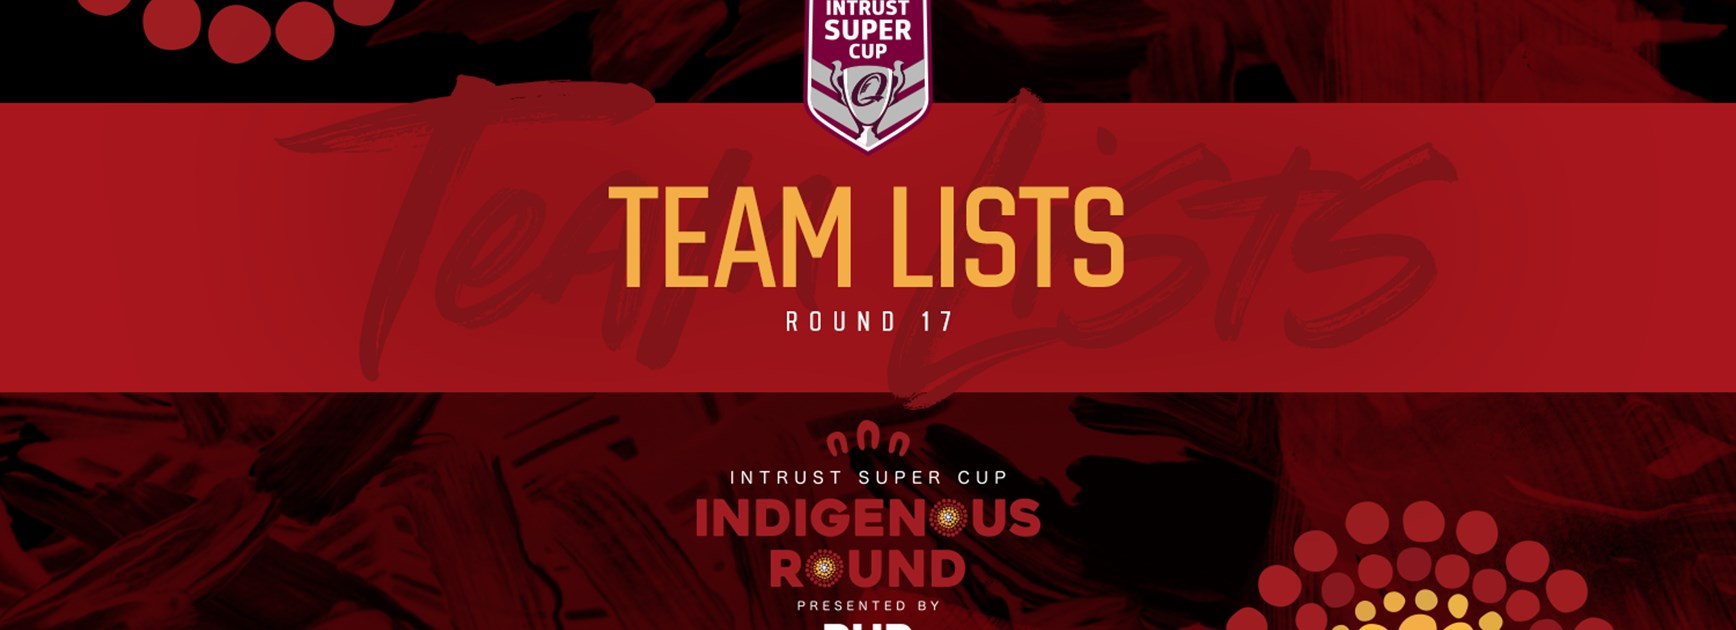 Intrust Super Cup Round 17 teams